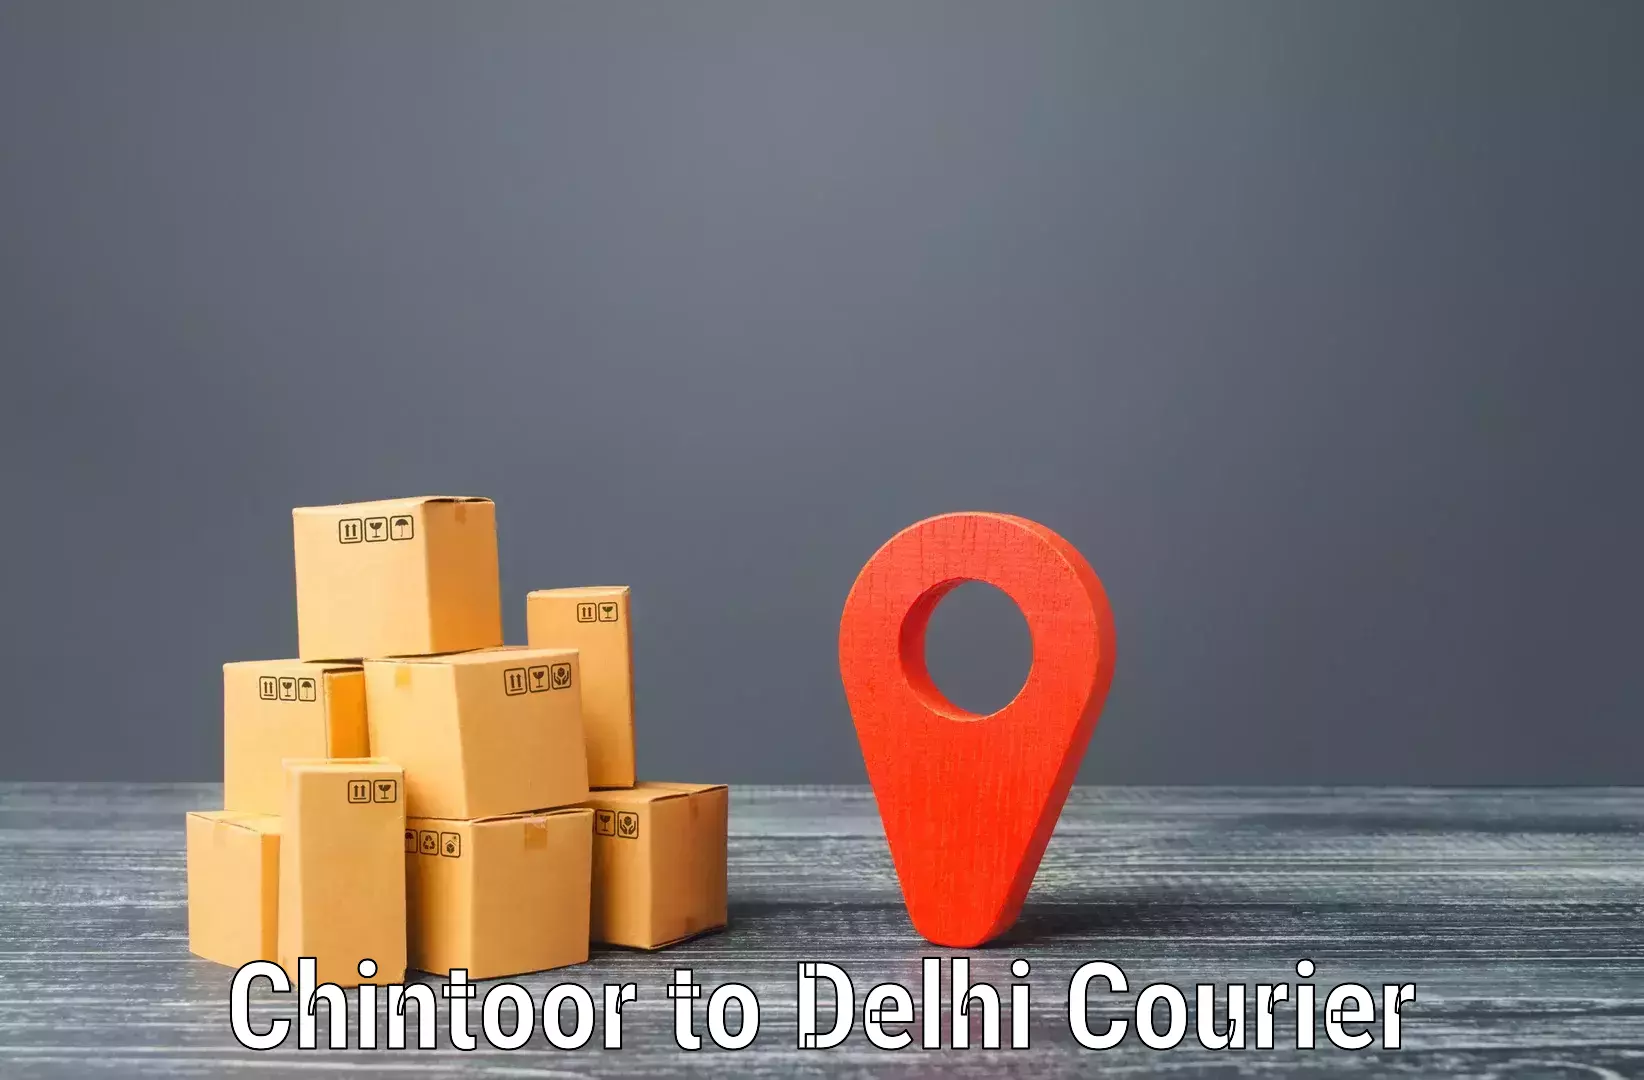 Global logistics network Chintoor to Delhi